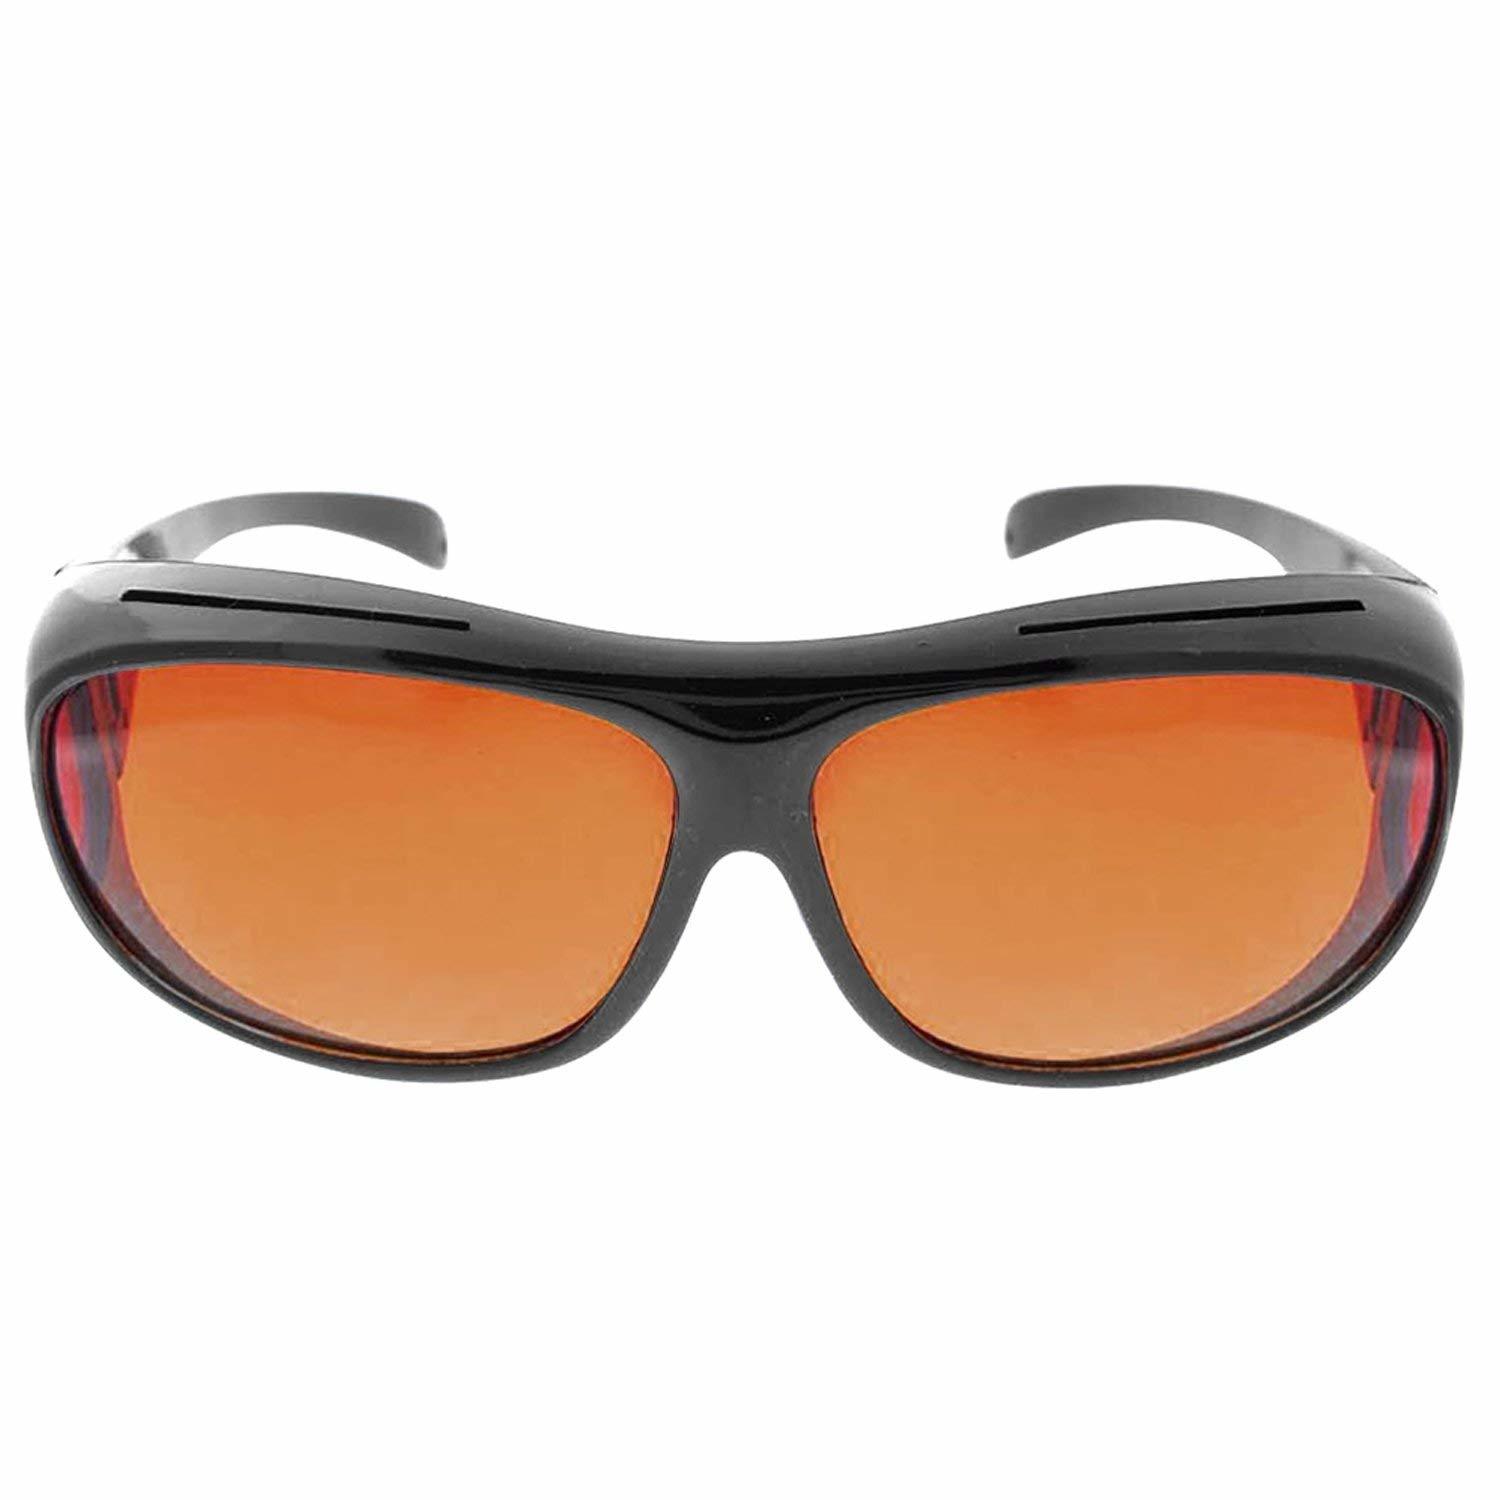 wraparound designer sunglasses